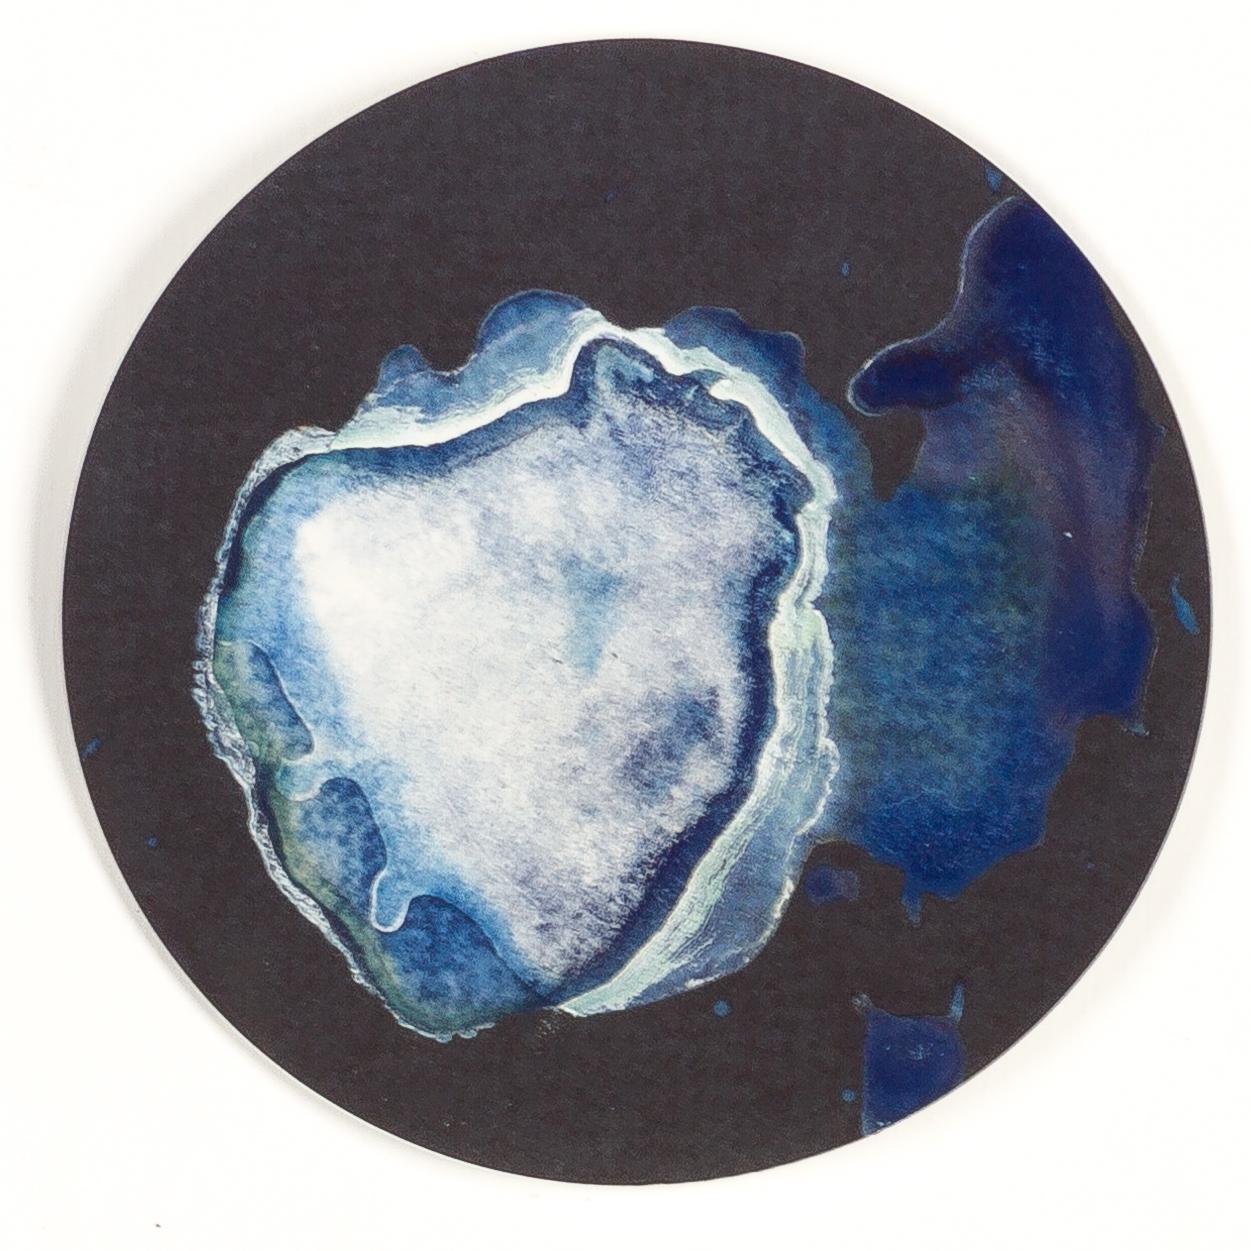 Medusas 11, 12 y 13, 2022 von Paola Davila 
Aus der Serie Mareas
Cyanotypie auf 300 g Baumwollpapier
Montiert in einer Petrischale aus hochfestem Borosilikatglas
Gesamtgröße: 36 cm Dm x 12 cm H x 2,4 cm tief.
Individuelle Bildgröße: 10,5 cm D. 
Jede